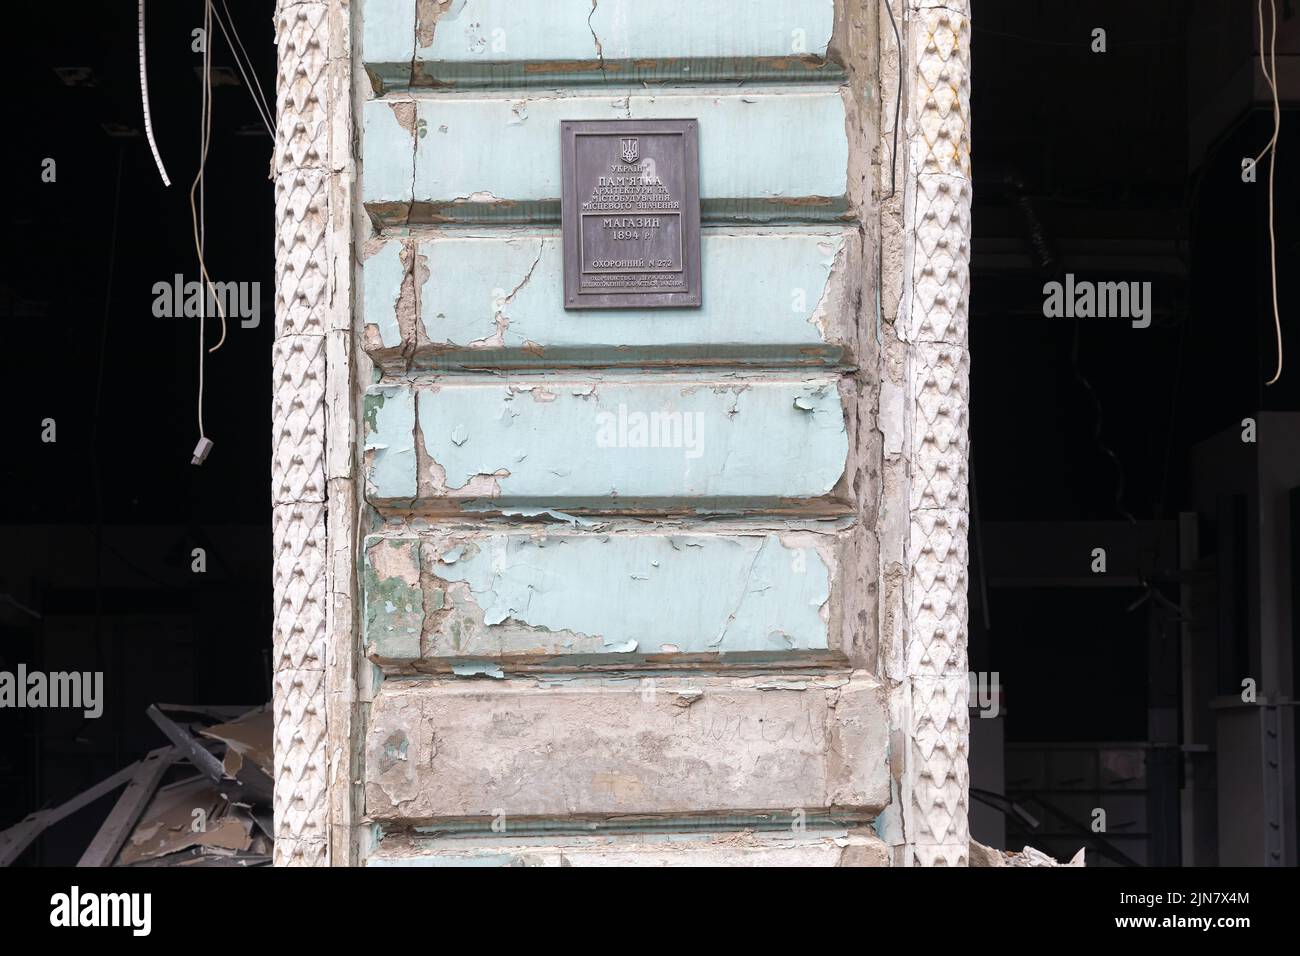 Monumento arquitectónico dañado de la ciudad de Kharkiv debido a los bombardeos rusos. En la pared del edificio se observa una placa conmemorativa sobre el valor arquitectónico del edificio. La inscripción es un monumento de arquitectura y urbanismo de importancia local. Comprar en 1894. Foto de stock